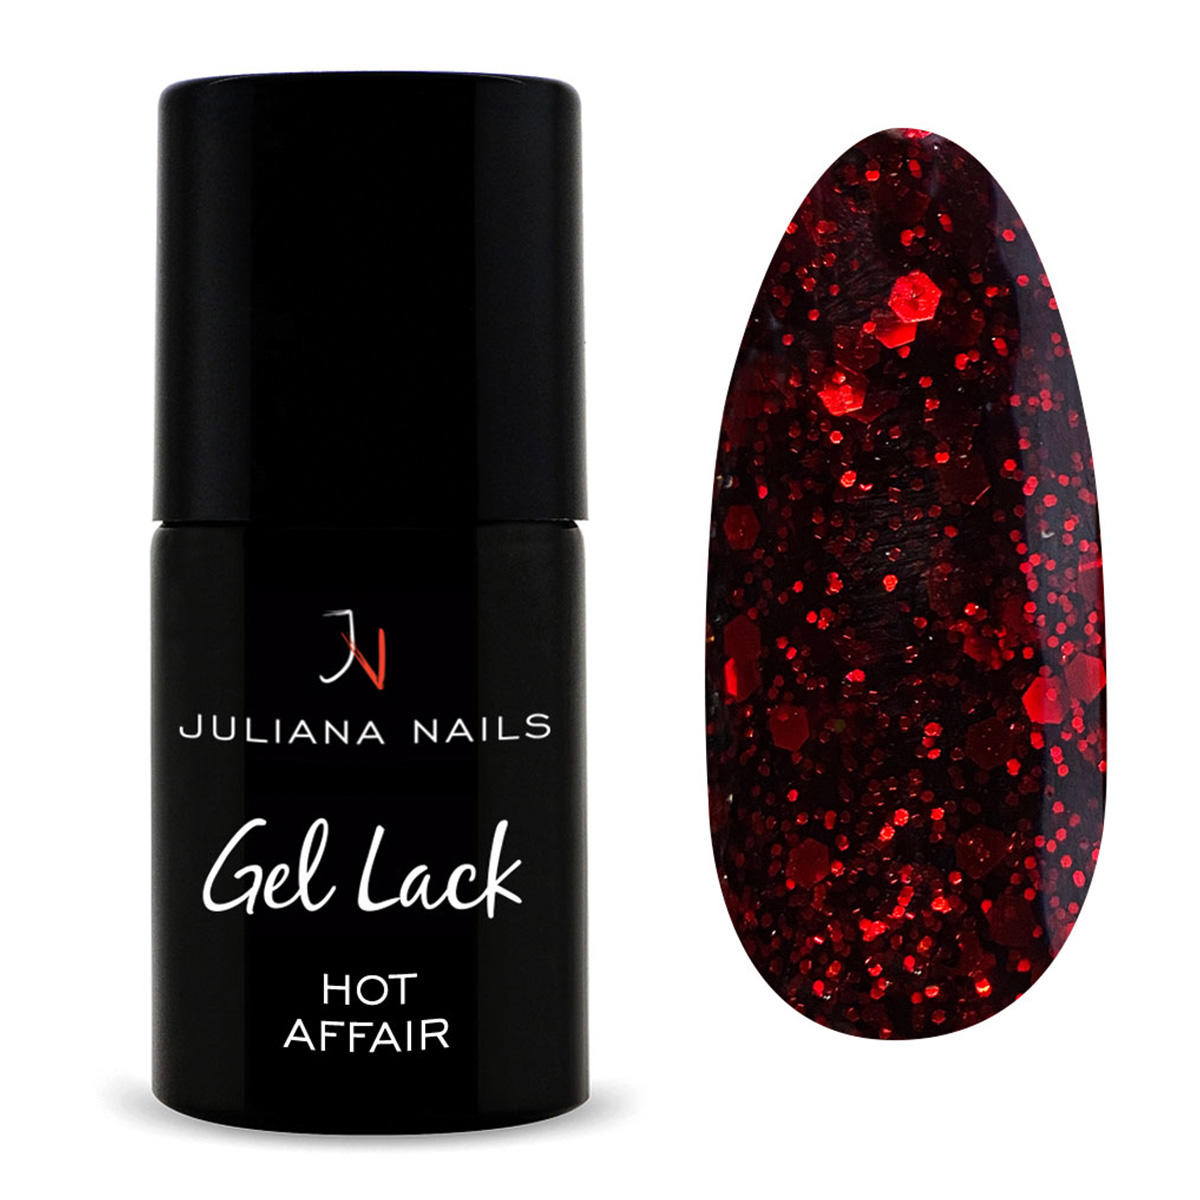 juliana nails gel lack glitter/shimmer hot affair, flasche 6 ml una relazione bollente